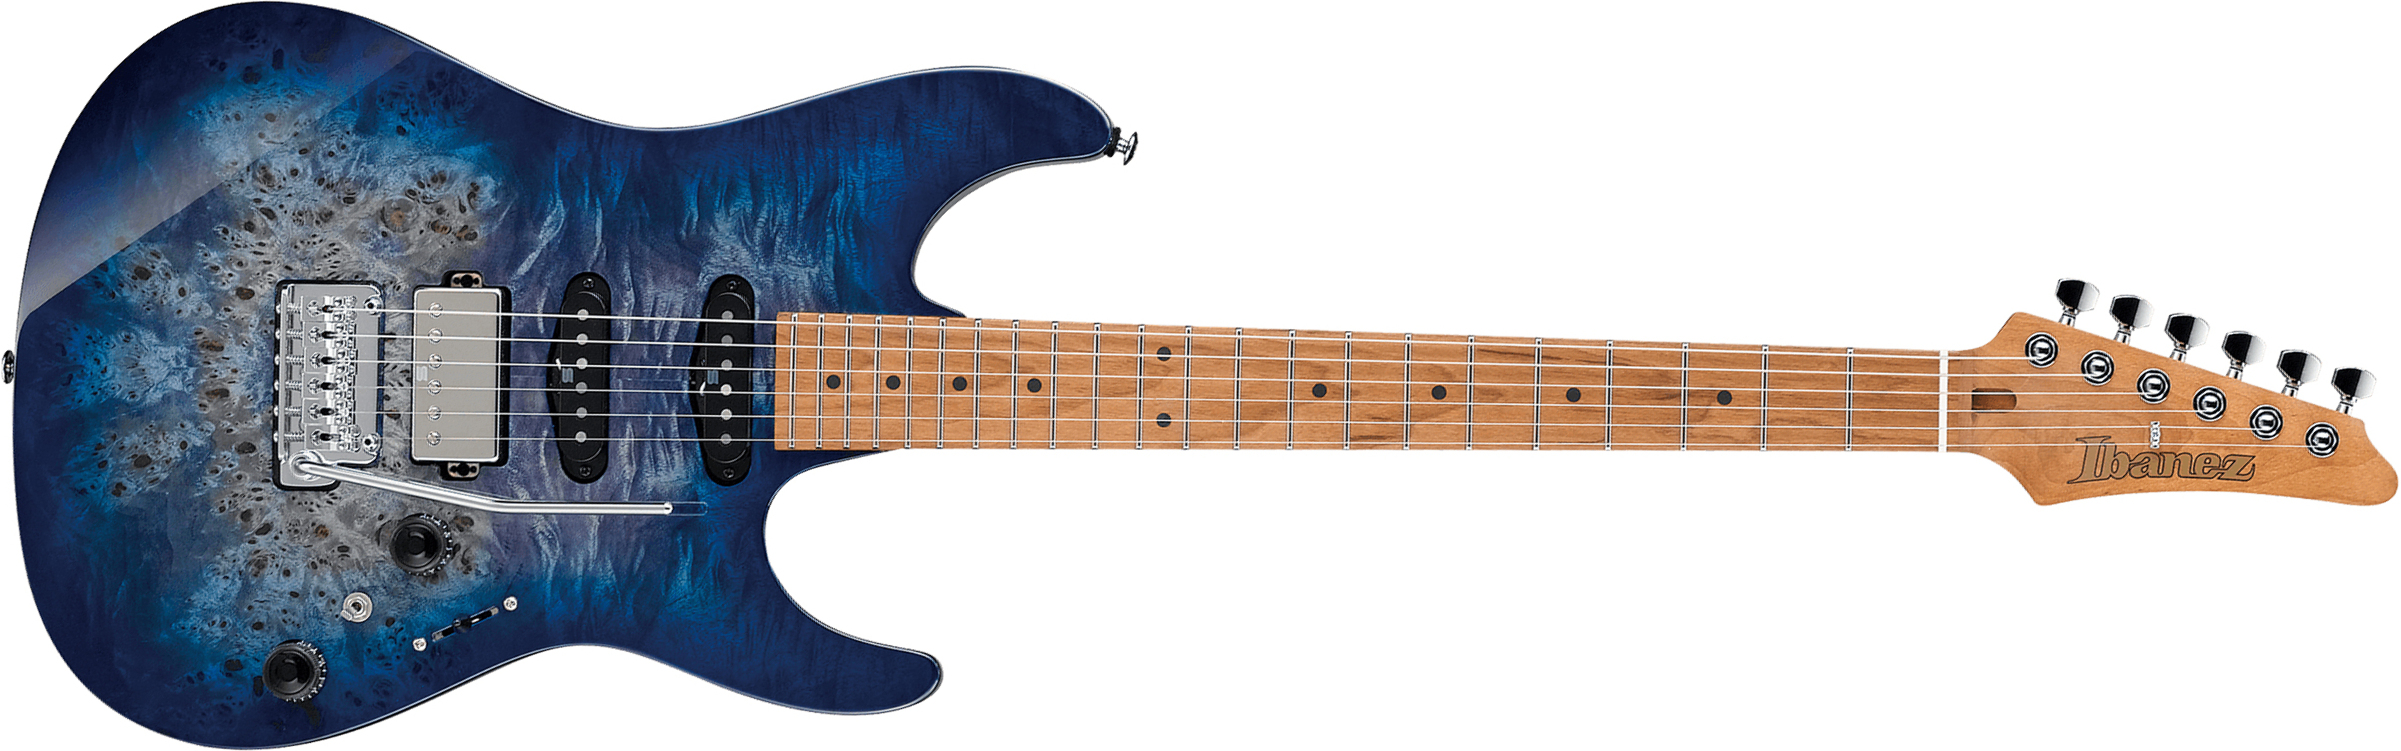 Ibanez Az226pb Cbb Premium Hss Trem Mn - Cerulean Blue Burst - Guitarra eléctrica de doble corte. - Main picture